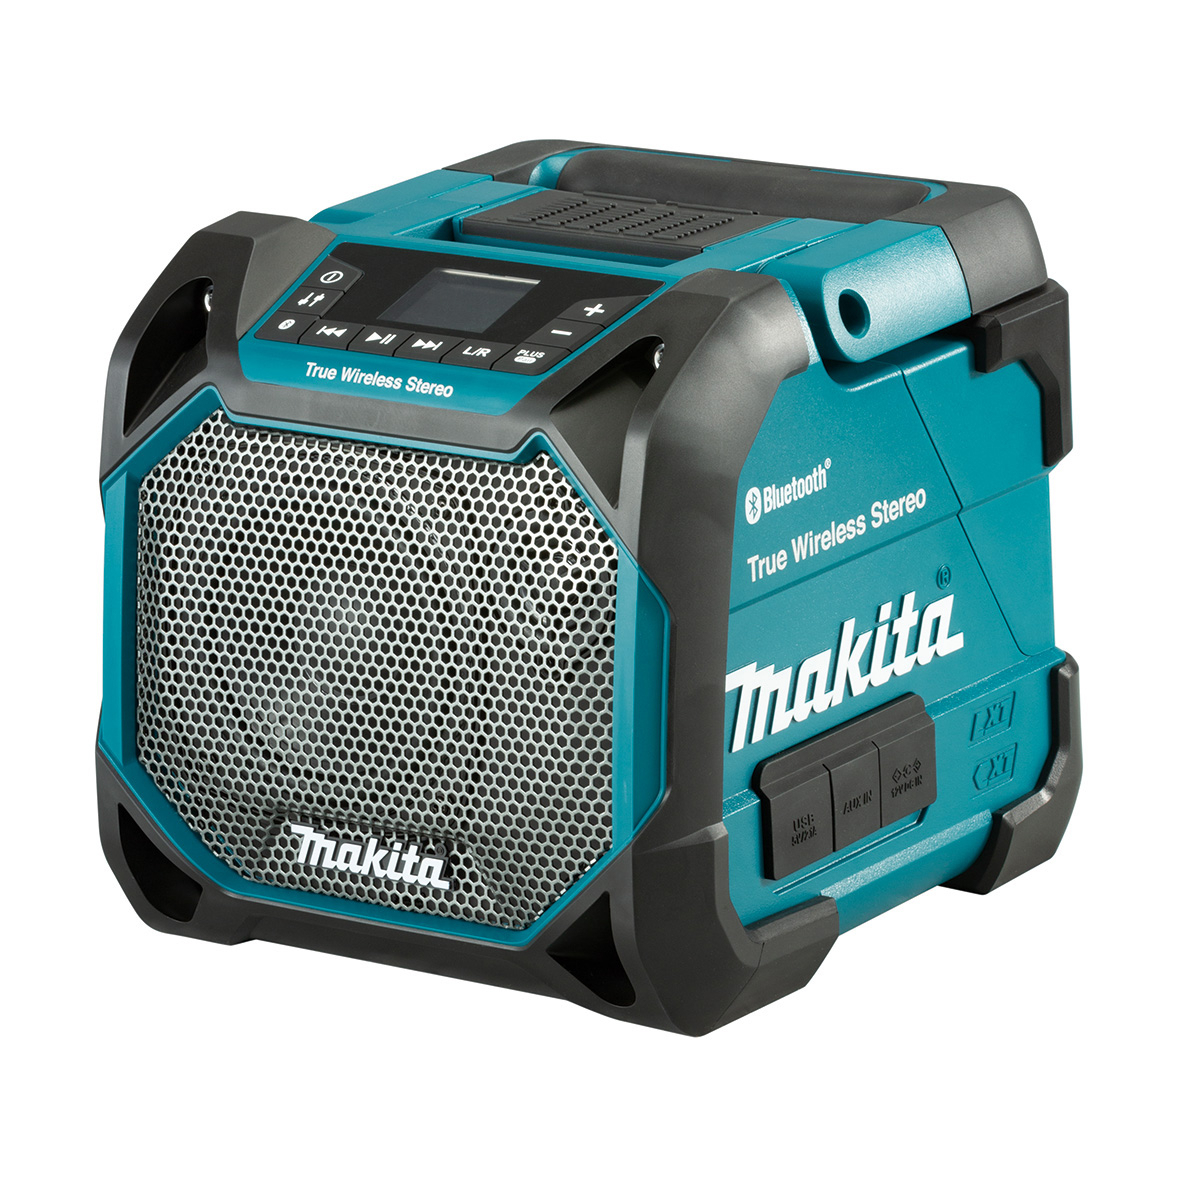 Rengør rummet scramble Hvile Makita 12V/18V Portable Bluetooth Speaker DMR203 | tools.com